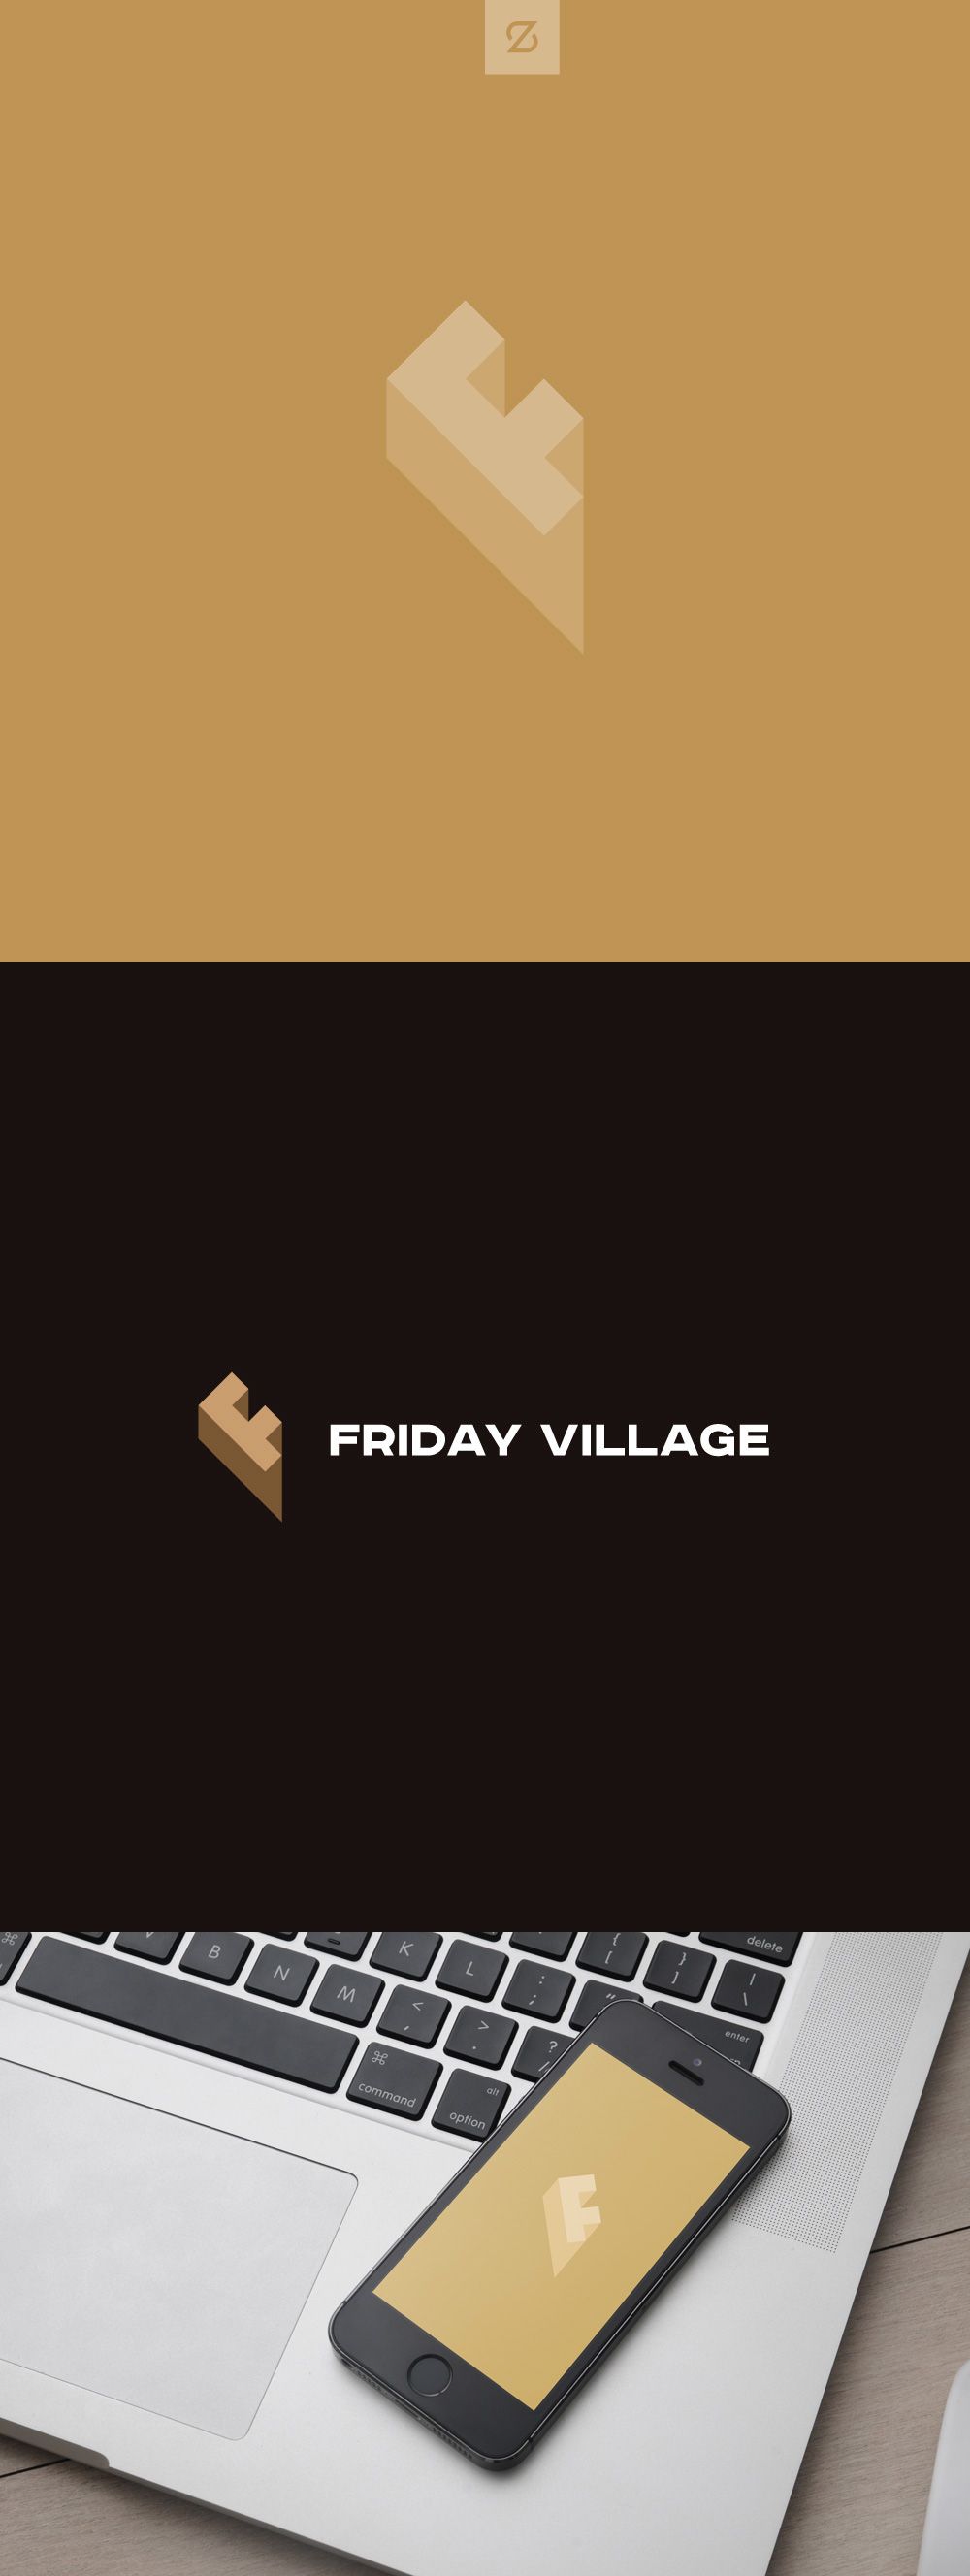 Лого и фирменный стиль для Friday Village (Фрайдей Вилледж) - дизайнер spawnkr